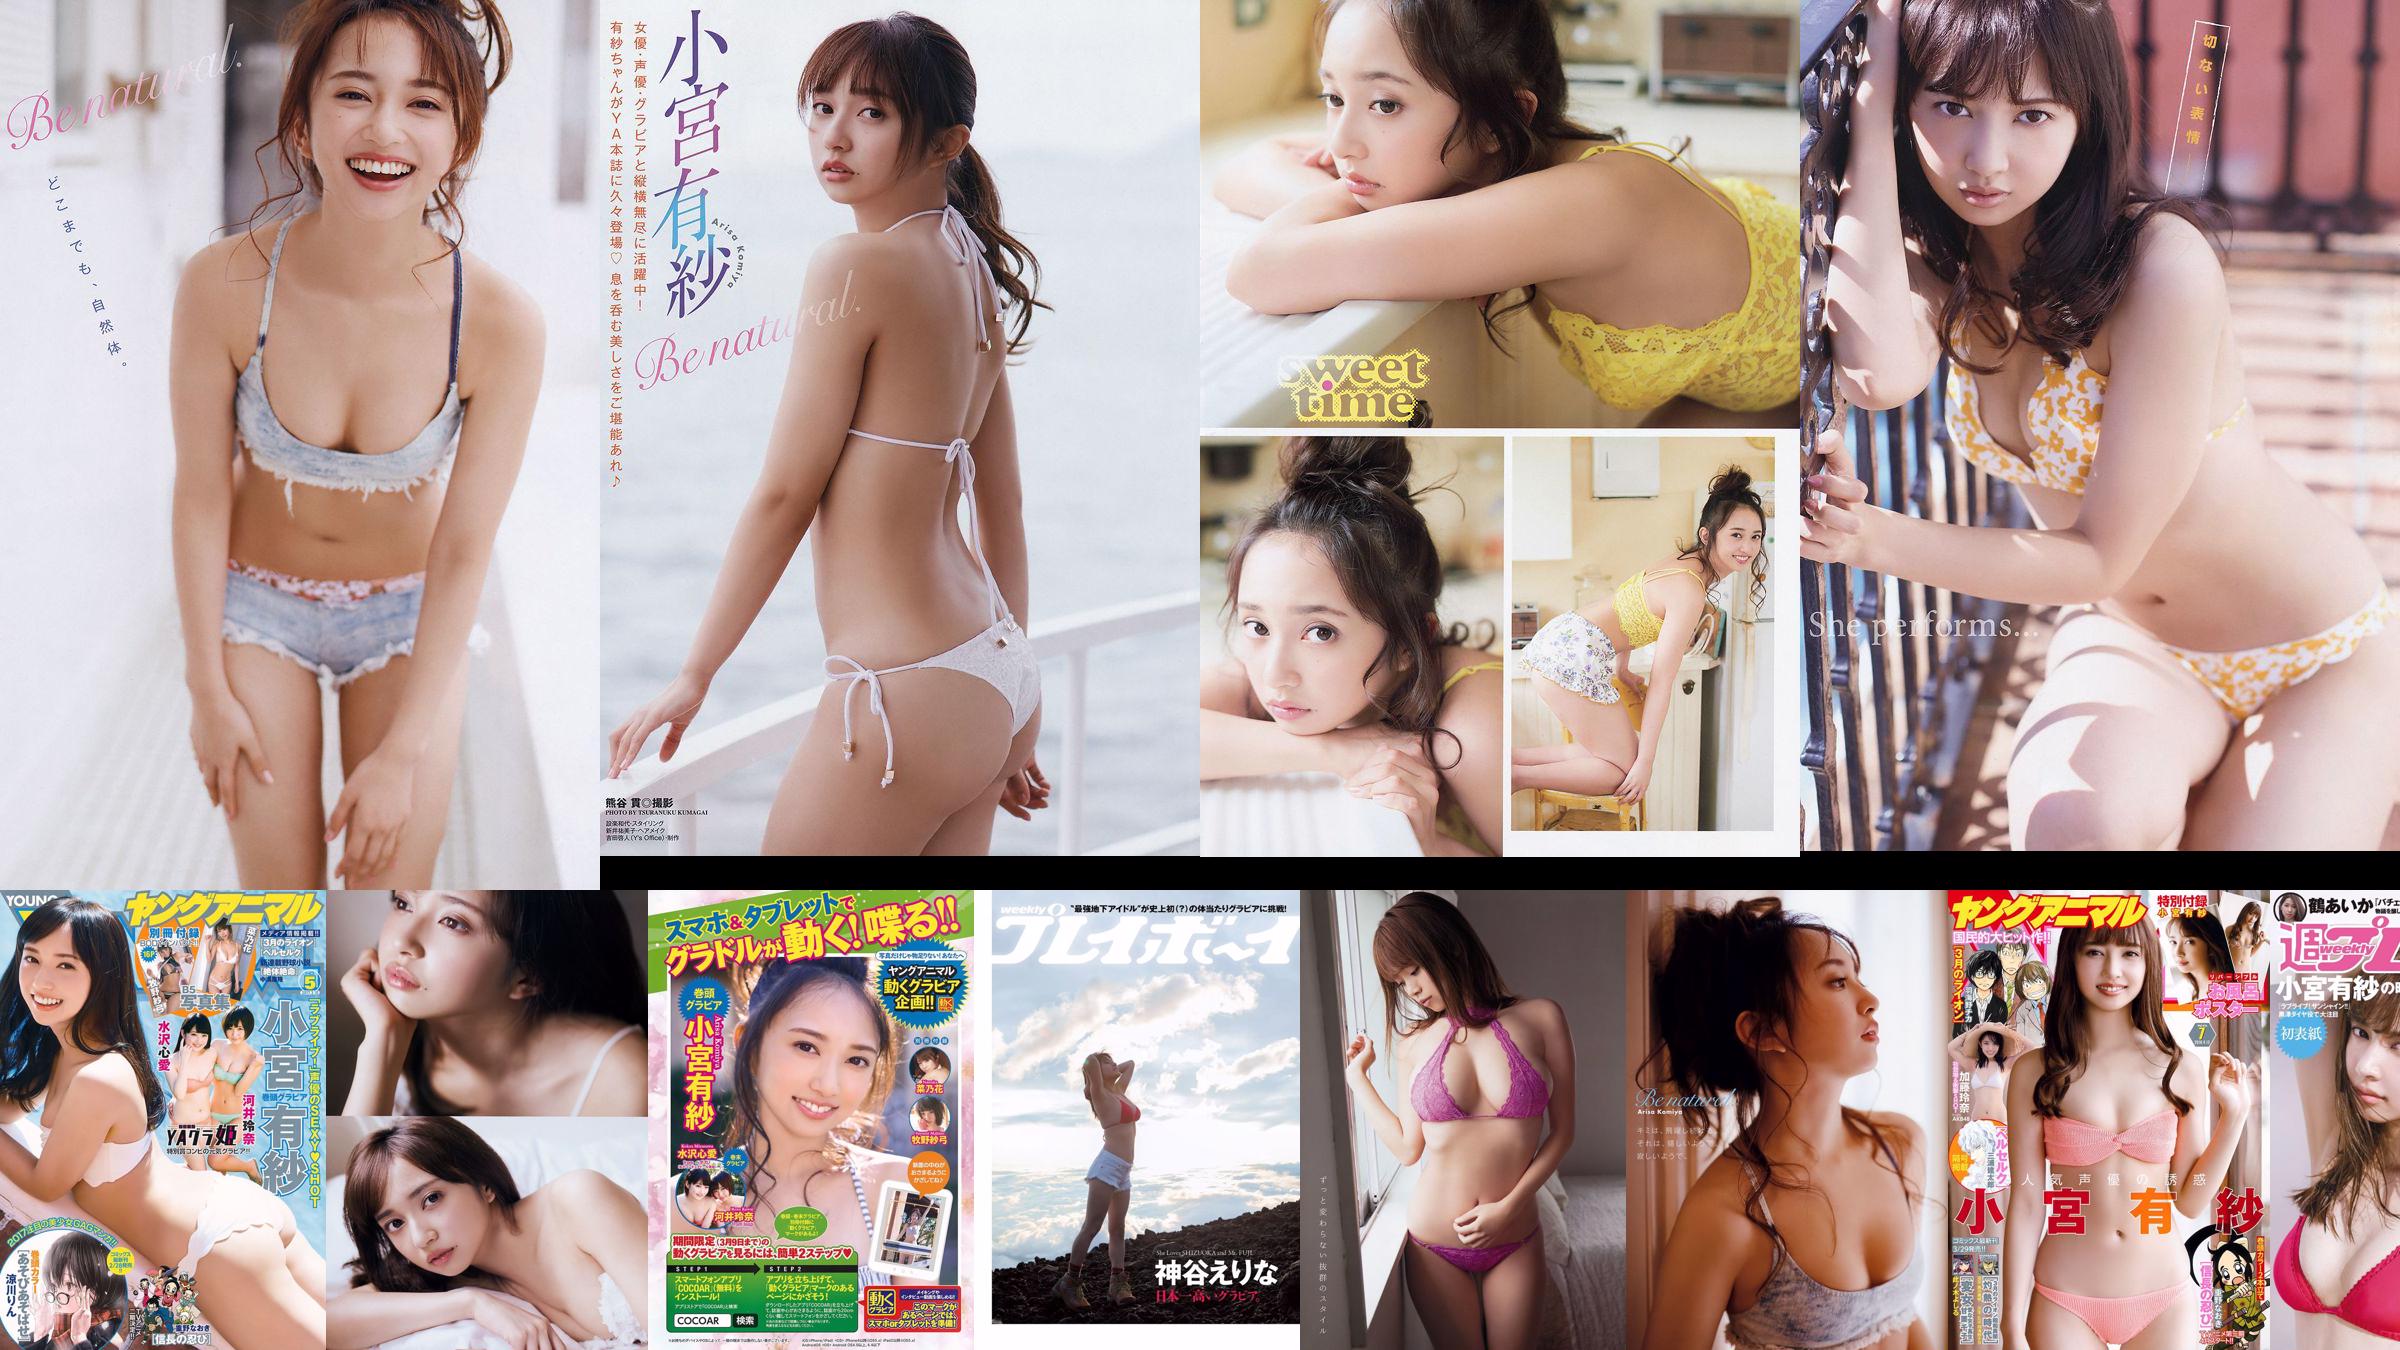 Arisa Komiya Aika Tsuru Sayaka Isoyama Kasumi Arimura Rina Otomo Sei Shiraishi Erina Kamiya [Weekly Playboy] 2017 No.41 Photograph No.511cfe Page 1